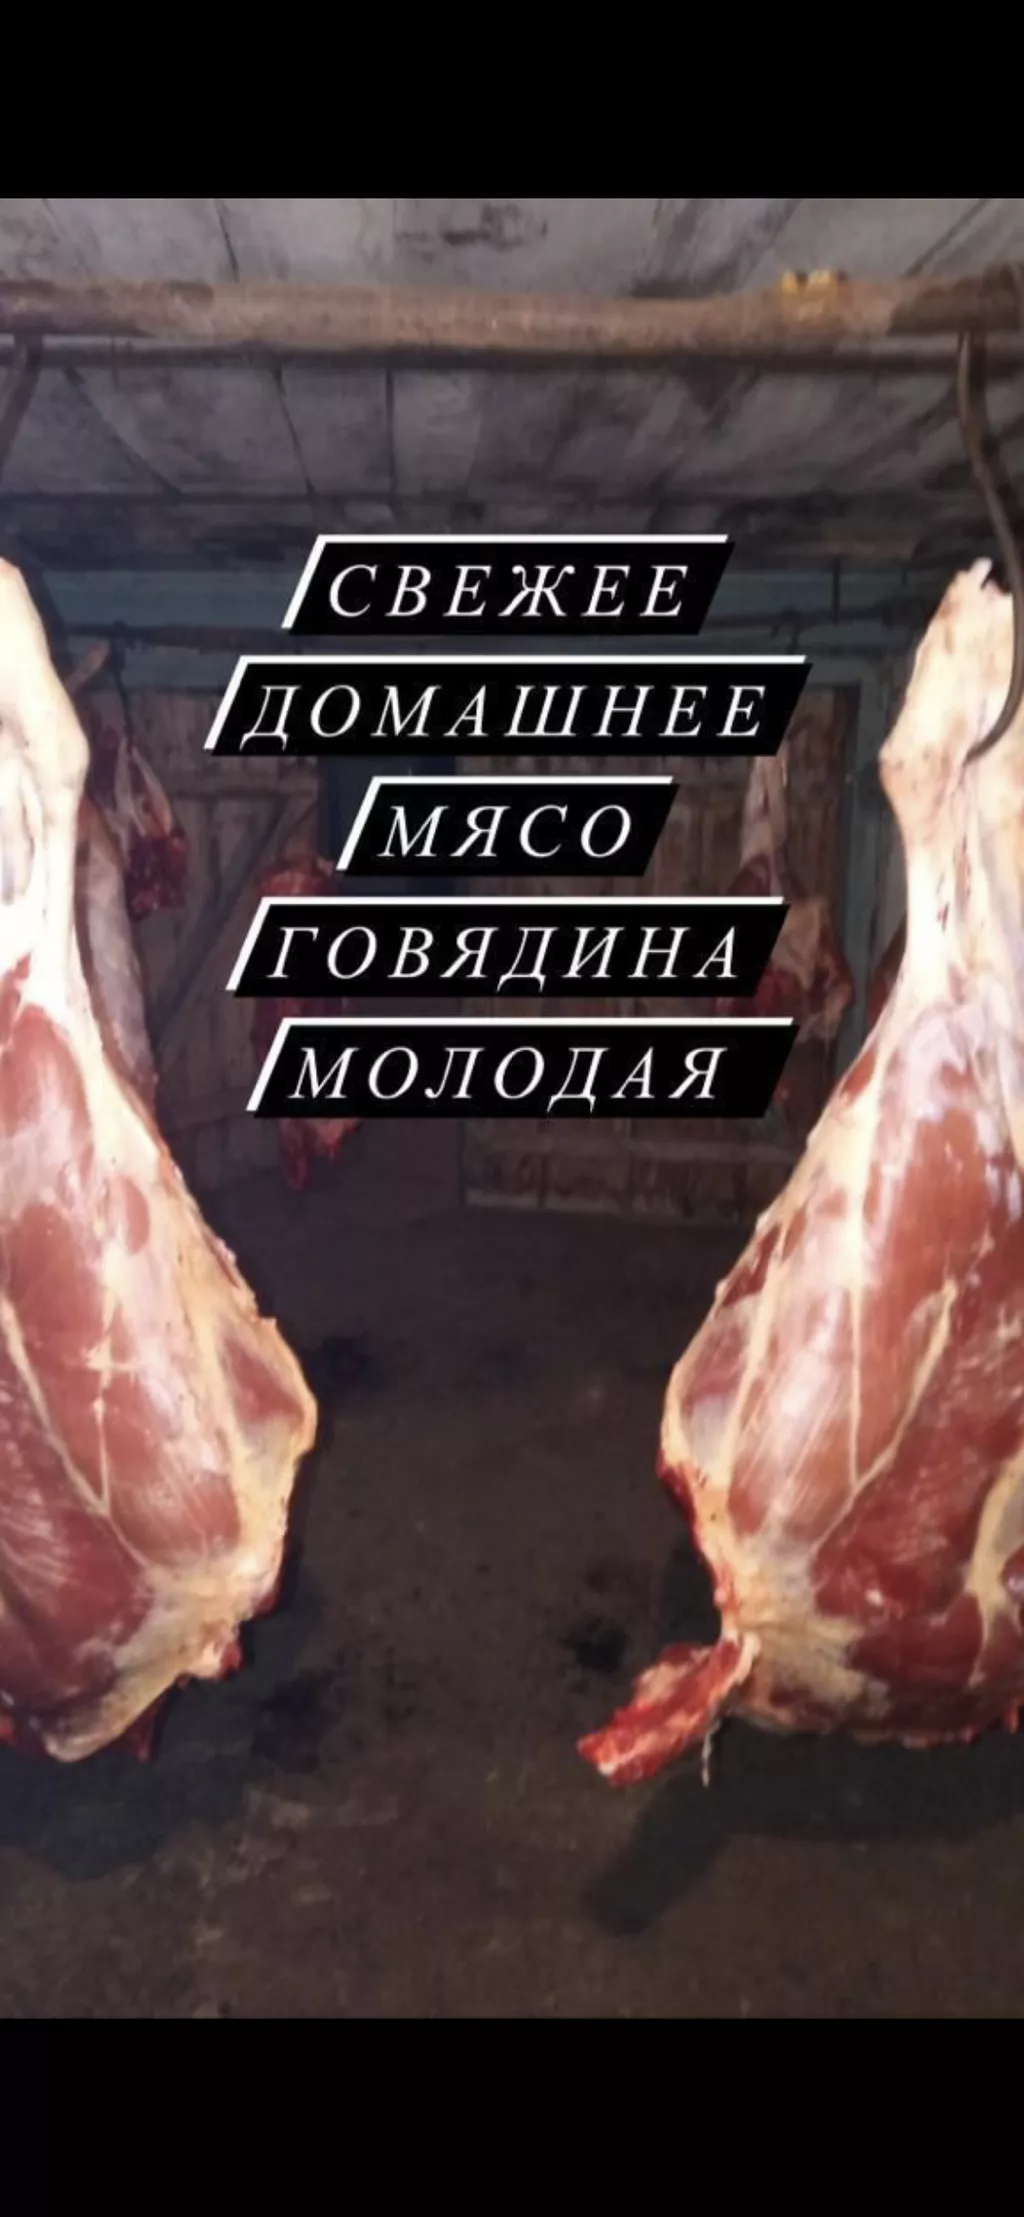 мясо говядины в Красноярске и Красноярском крае